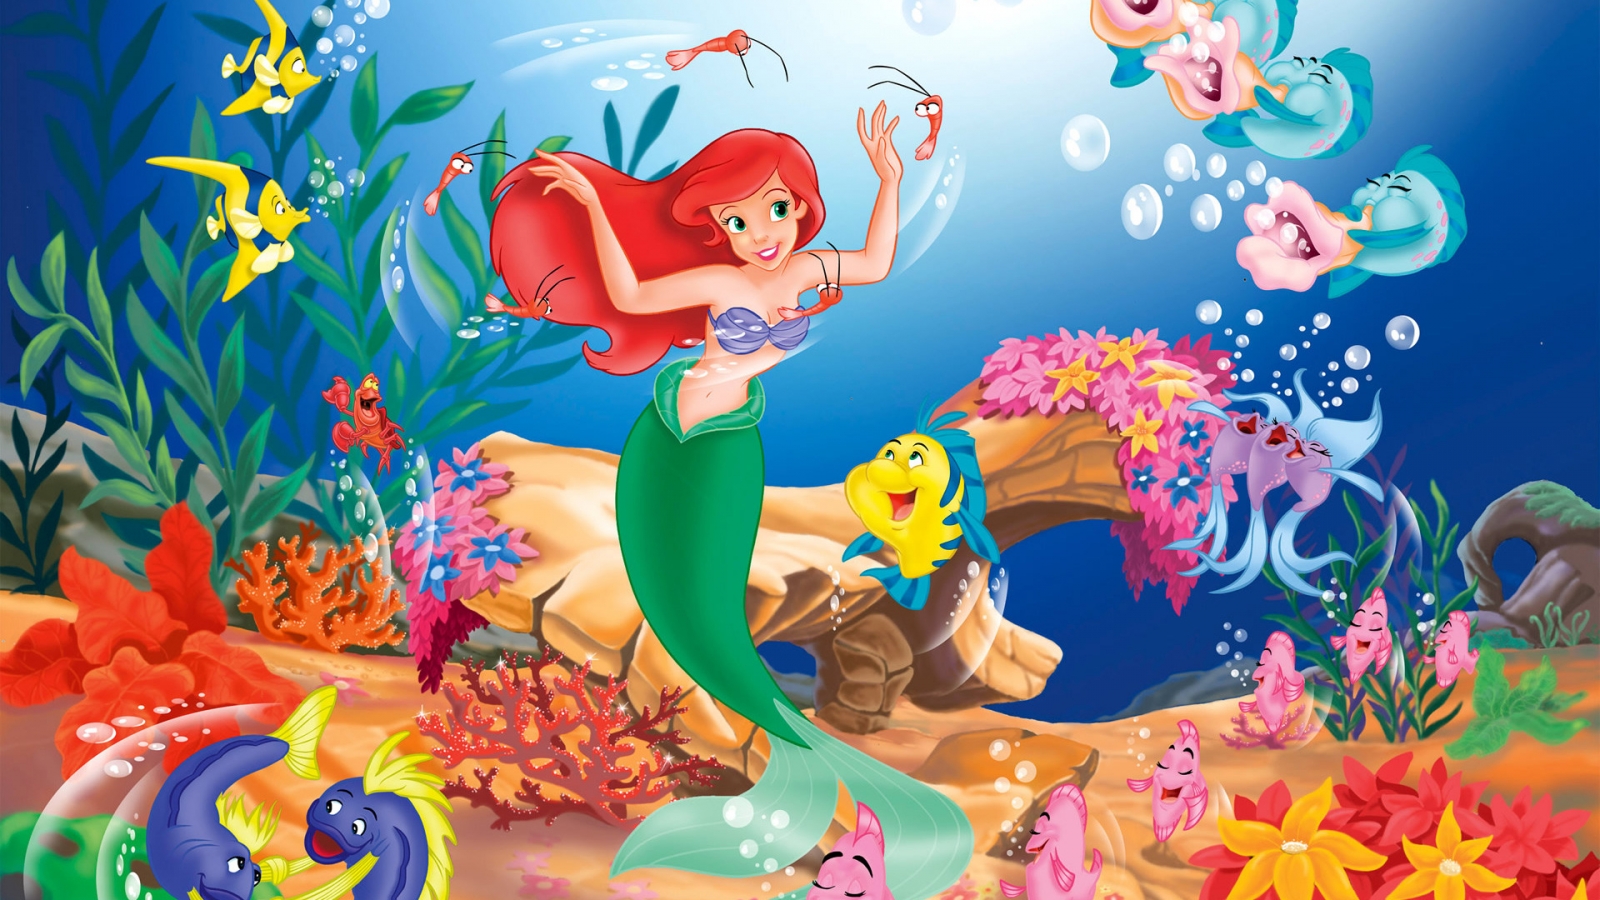 Little Mermaid for 1600 x 900 HDTV resolution